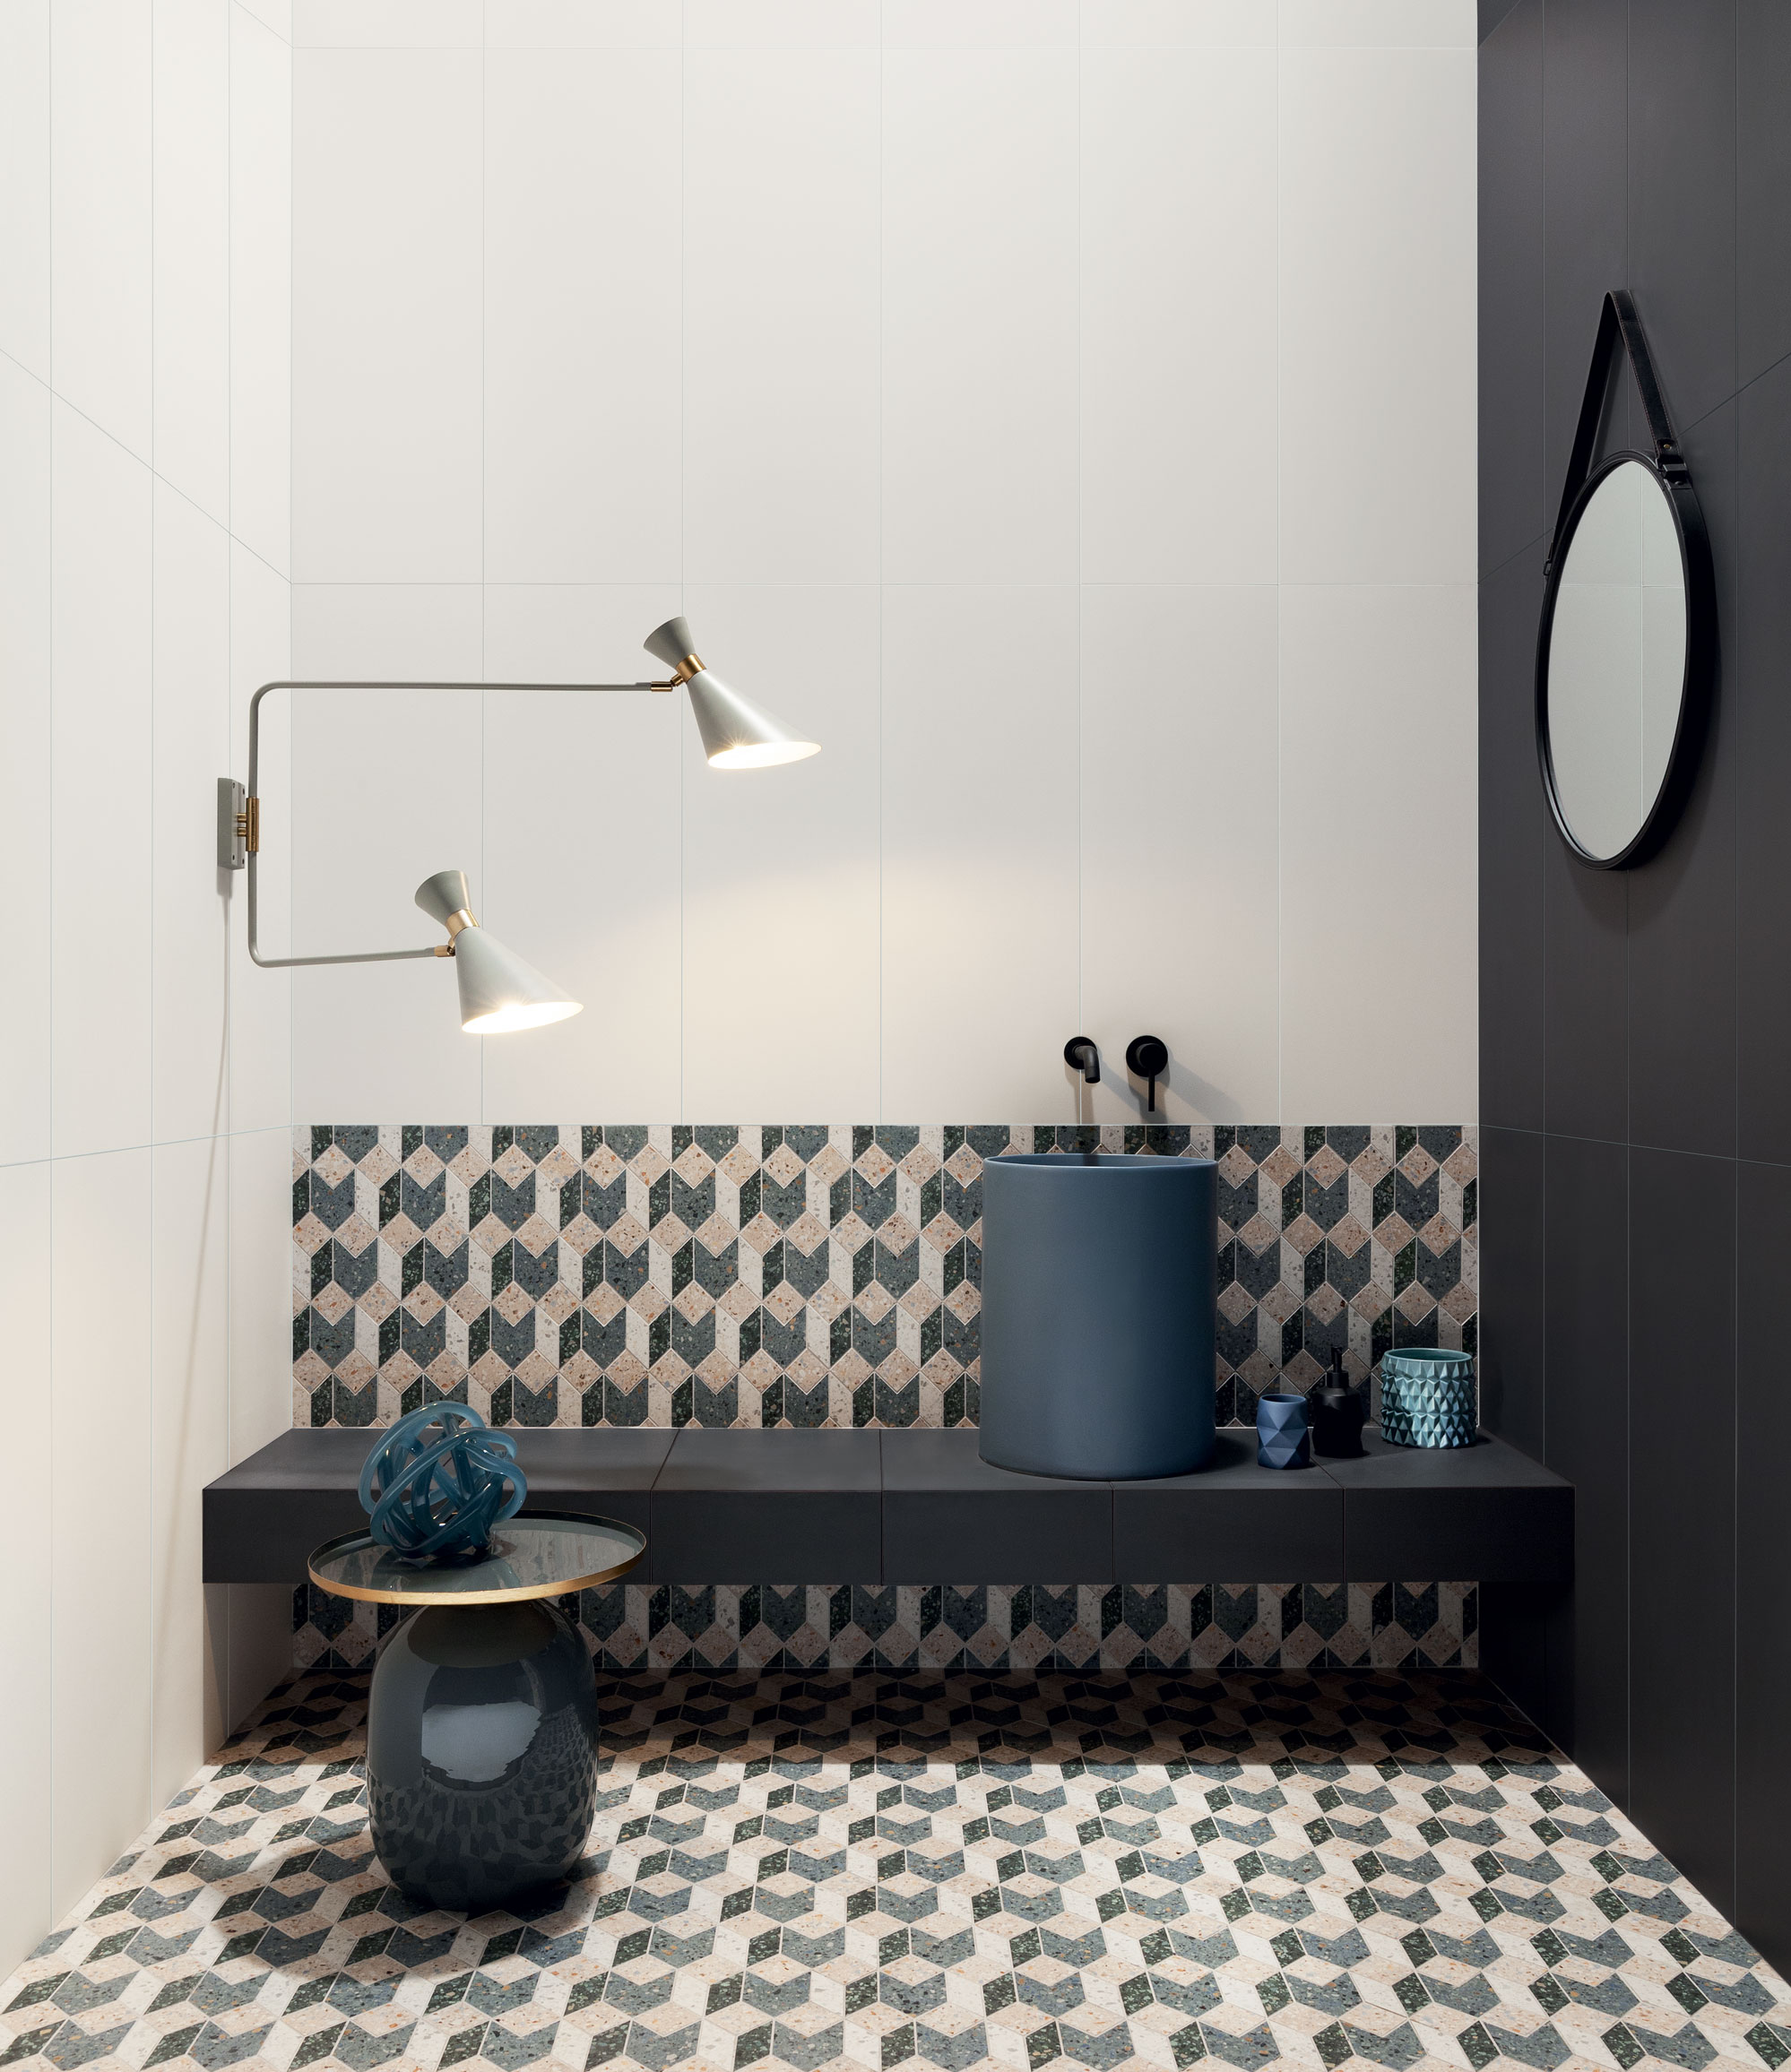 Włoski design w łazience urządzonej w trzech kolorach